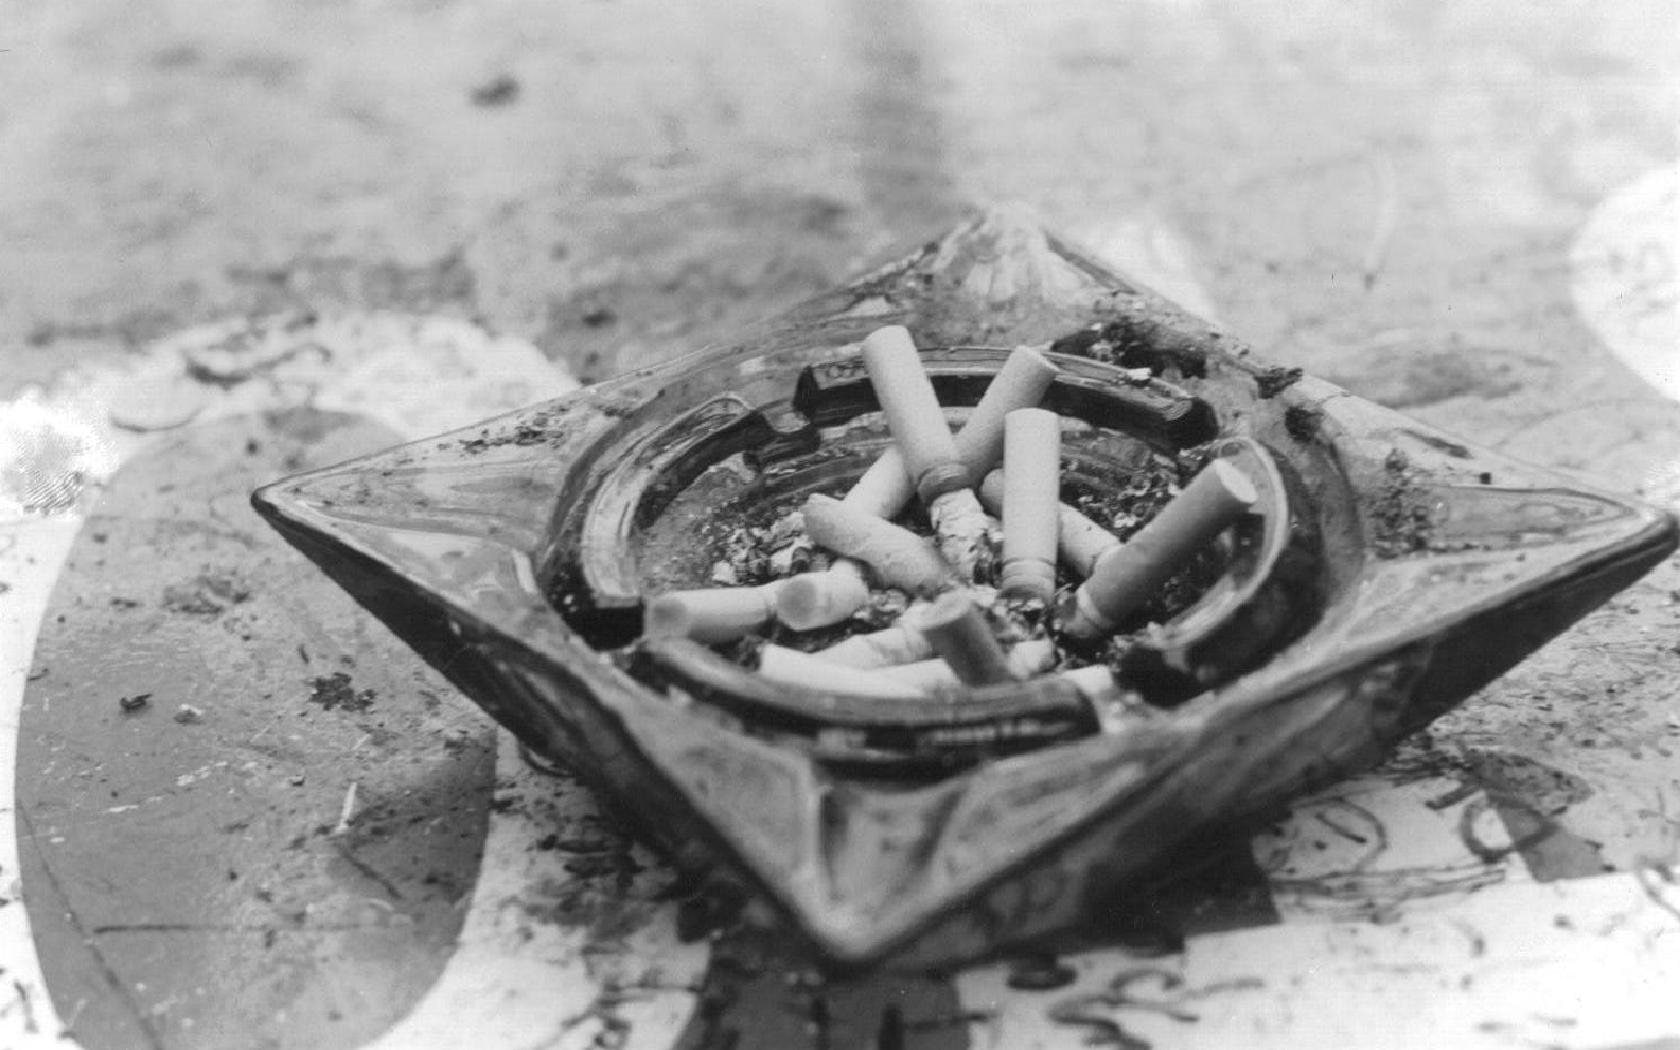 Man Made, Cigarette, bad habit, cigarette butt, ash, ashtray